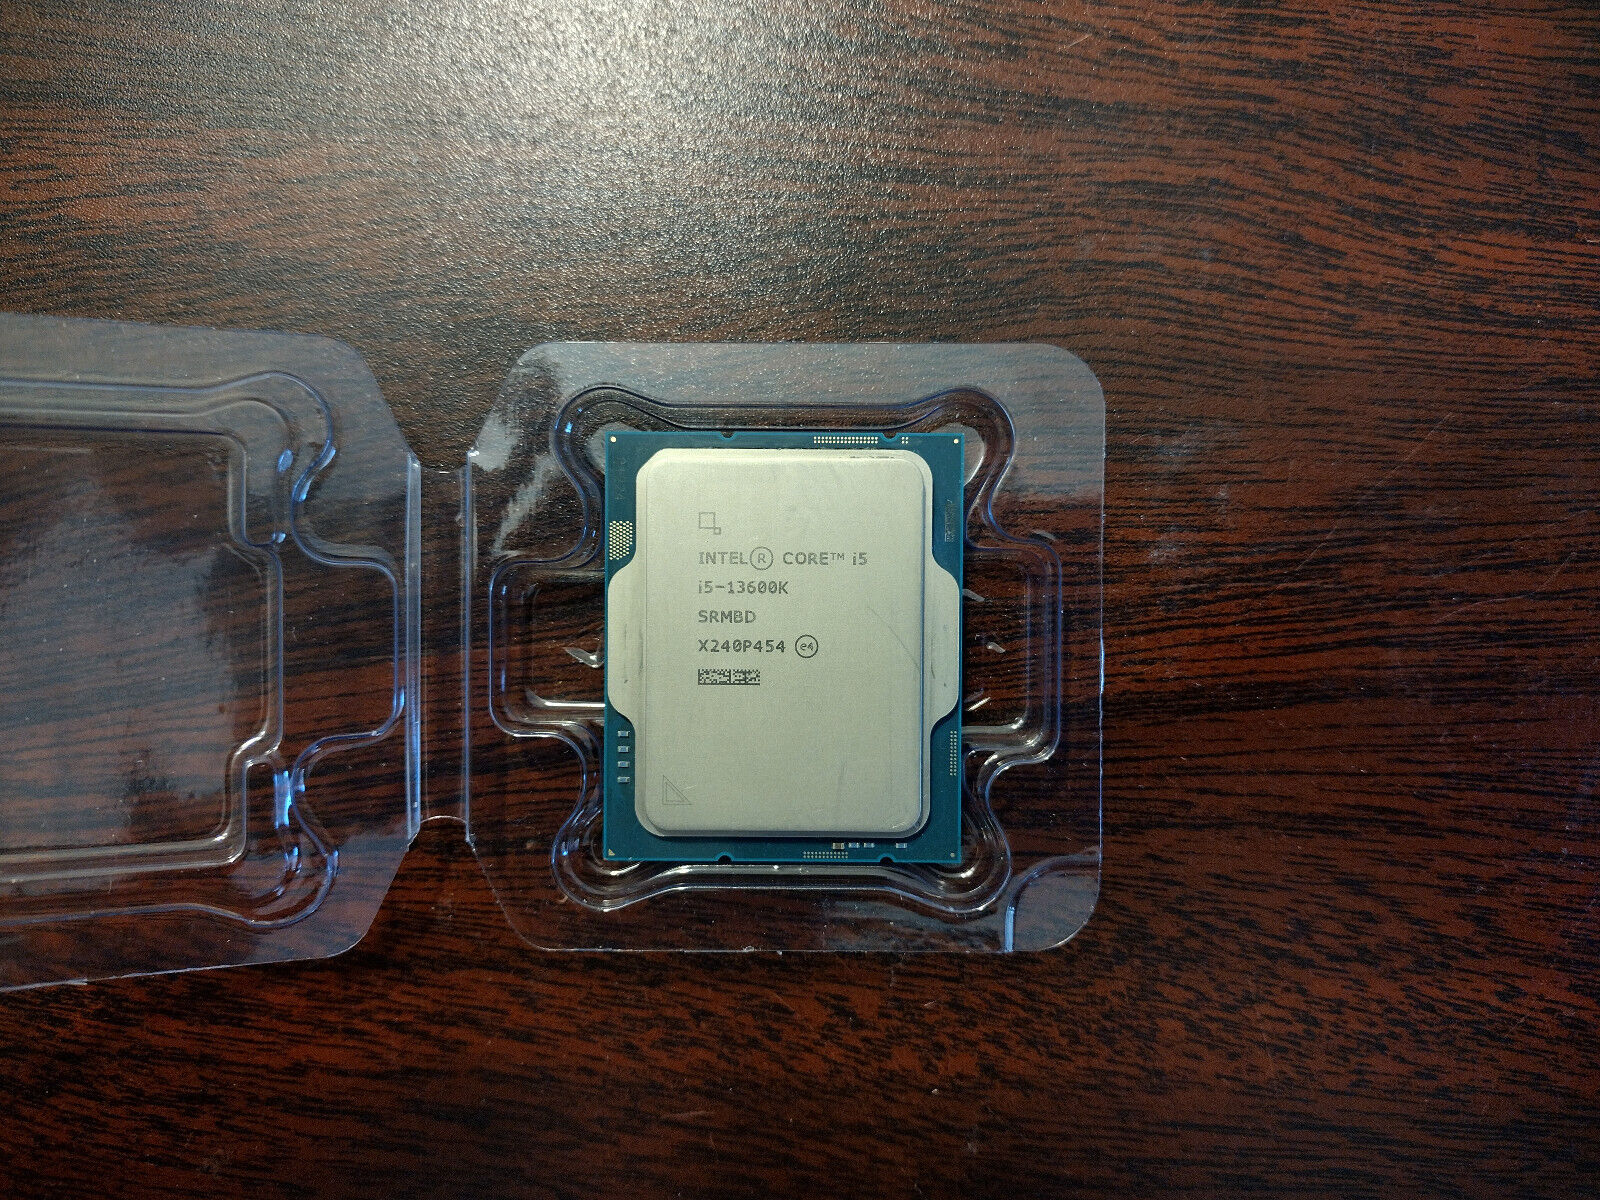 Intel Core i5-13600K SRMBD 3.5-5.1GHz 14core (6P+8E) Desktop Processor CPU